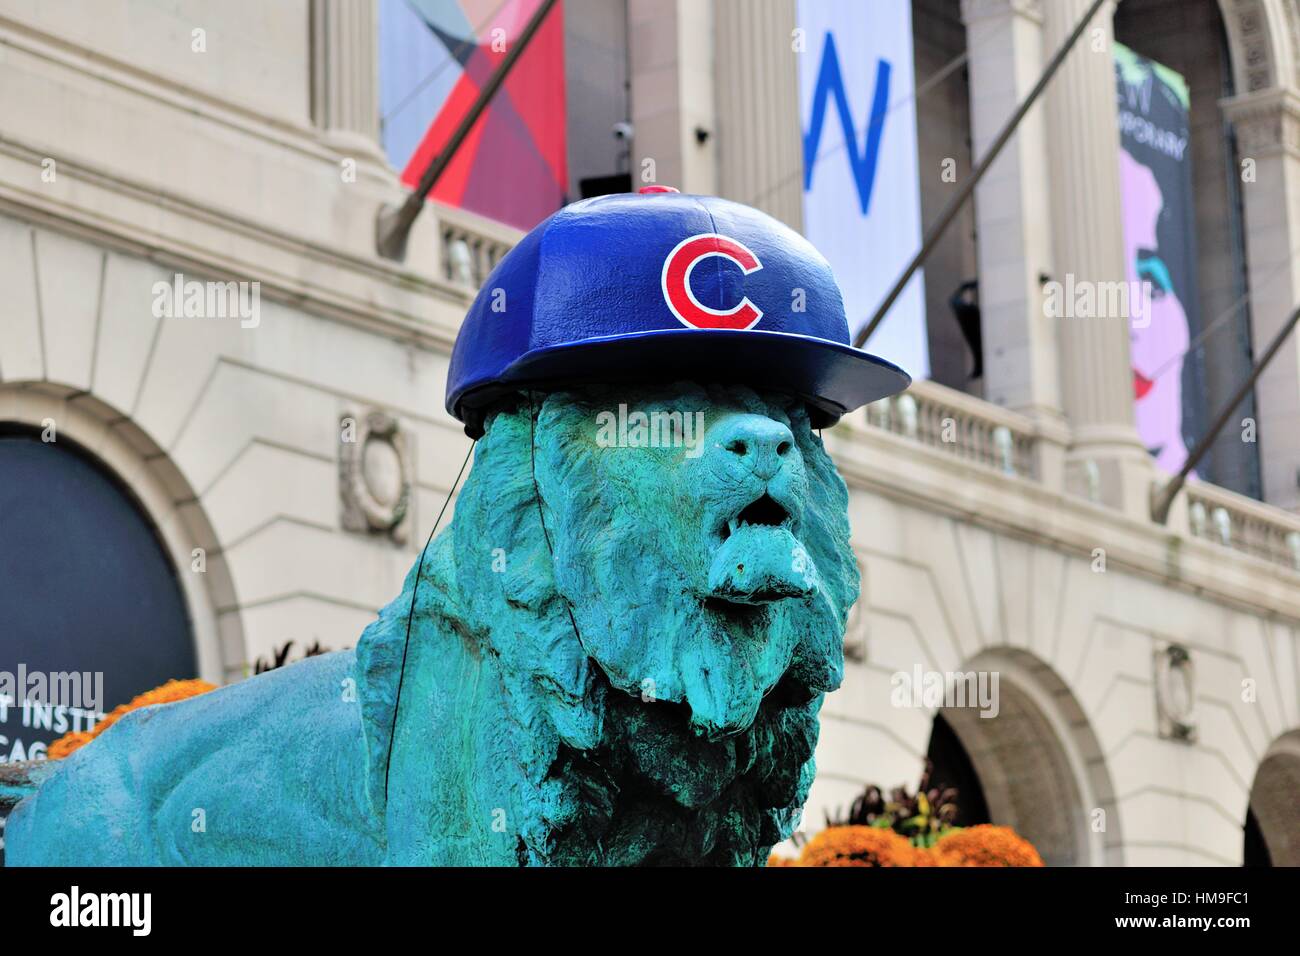 Las famosas estatuas de león delante del Instituto de Arte de Chicago adornados con sombreros como el museo rinde homenaje a los Cubs. Chicago, Illinois, Estados Unidos. Foto de stock